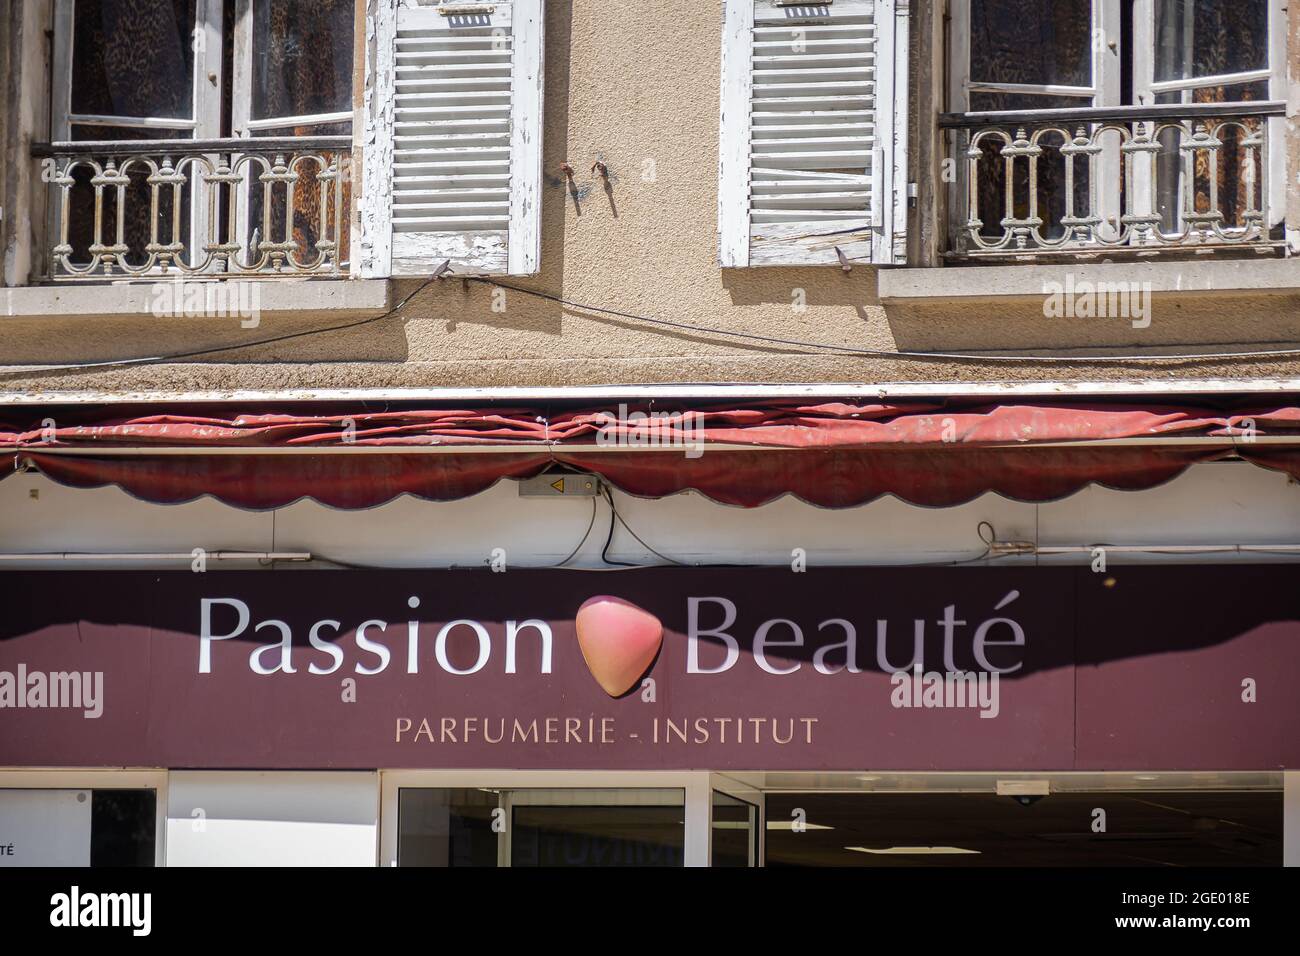 Sisteron, Frankreich - 7. Juli 2020: Passion Beaute Sisteron Parfümerie und Institut - Parfüms, Beauty-Produkte, Gesicht / Körperpflege für Männer und Frauen. Stockfoto